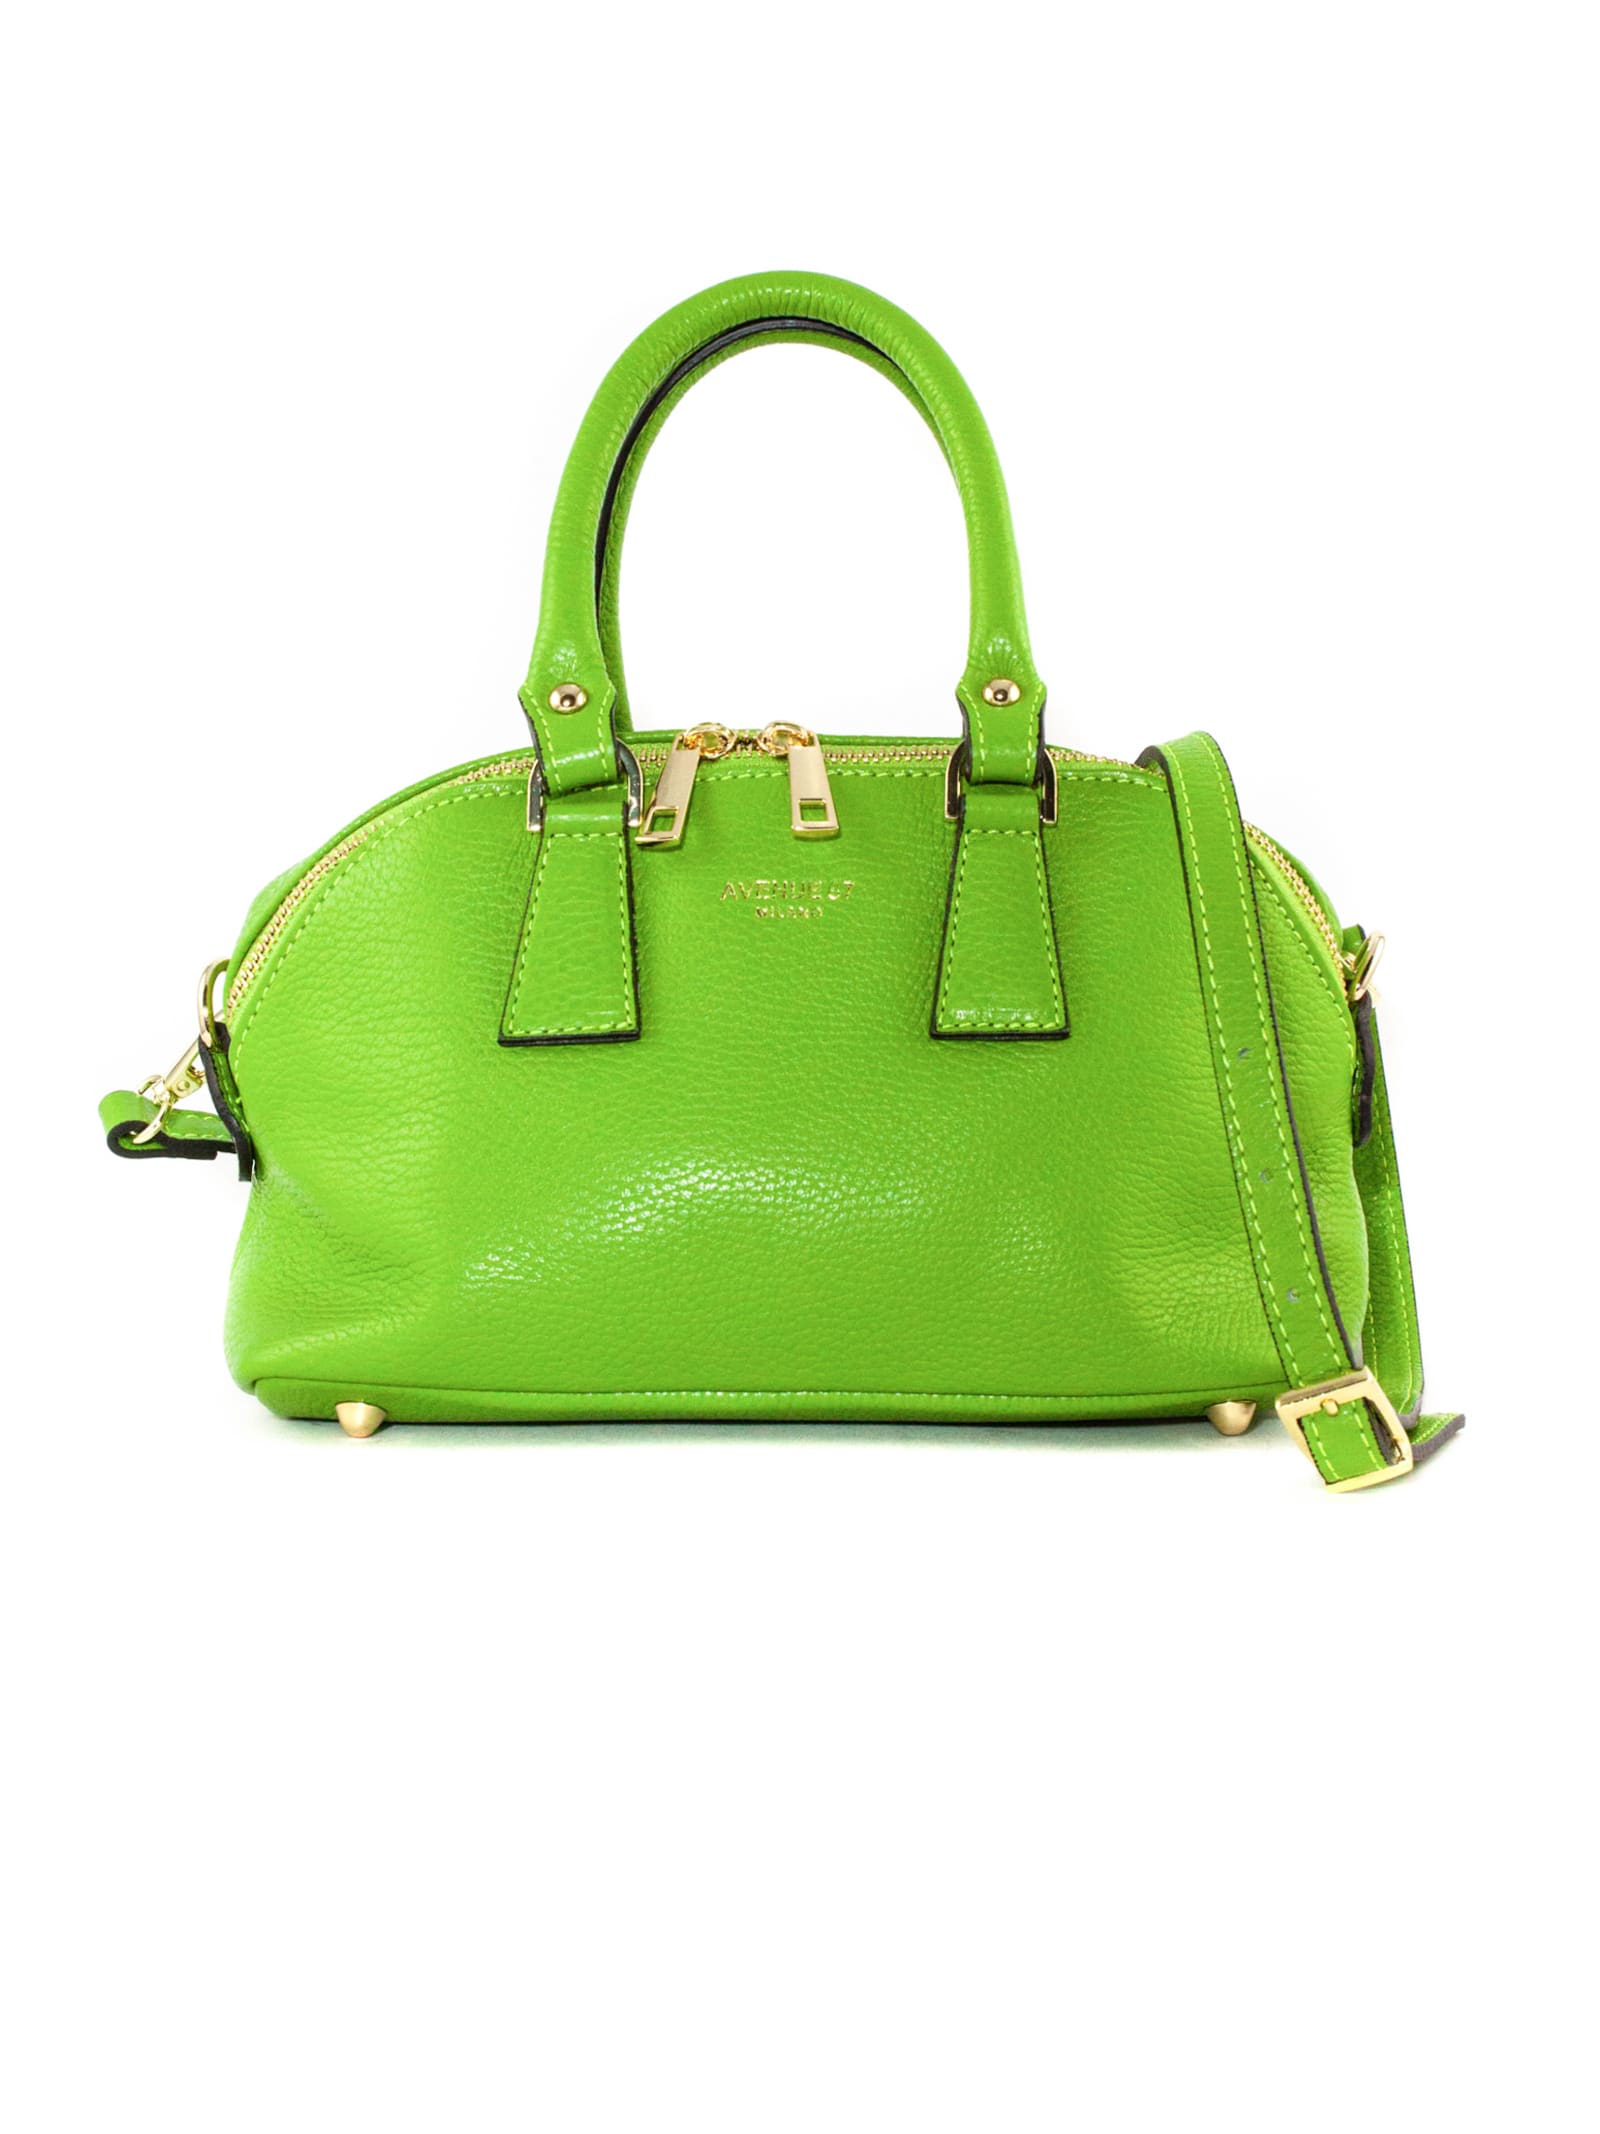 Avenue 67 Green Leather Fandango Toy Bag In Verde